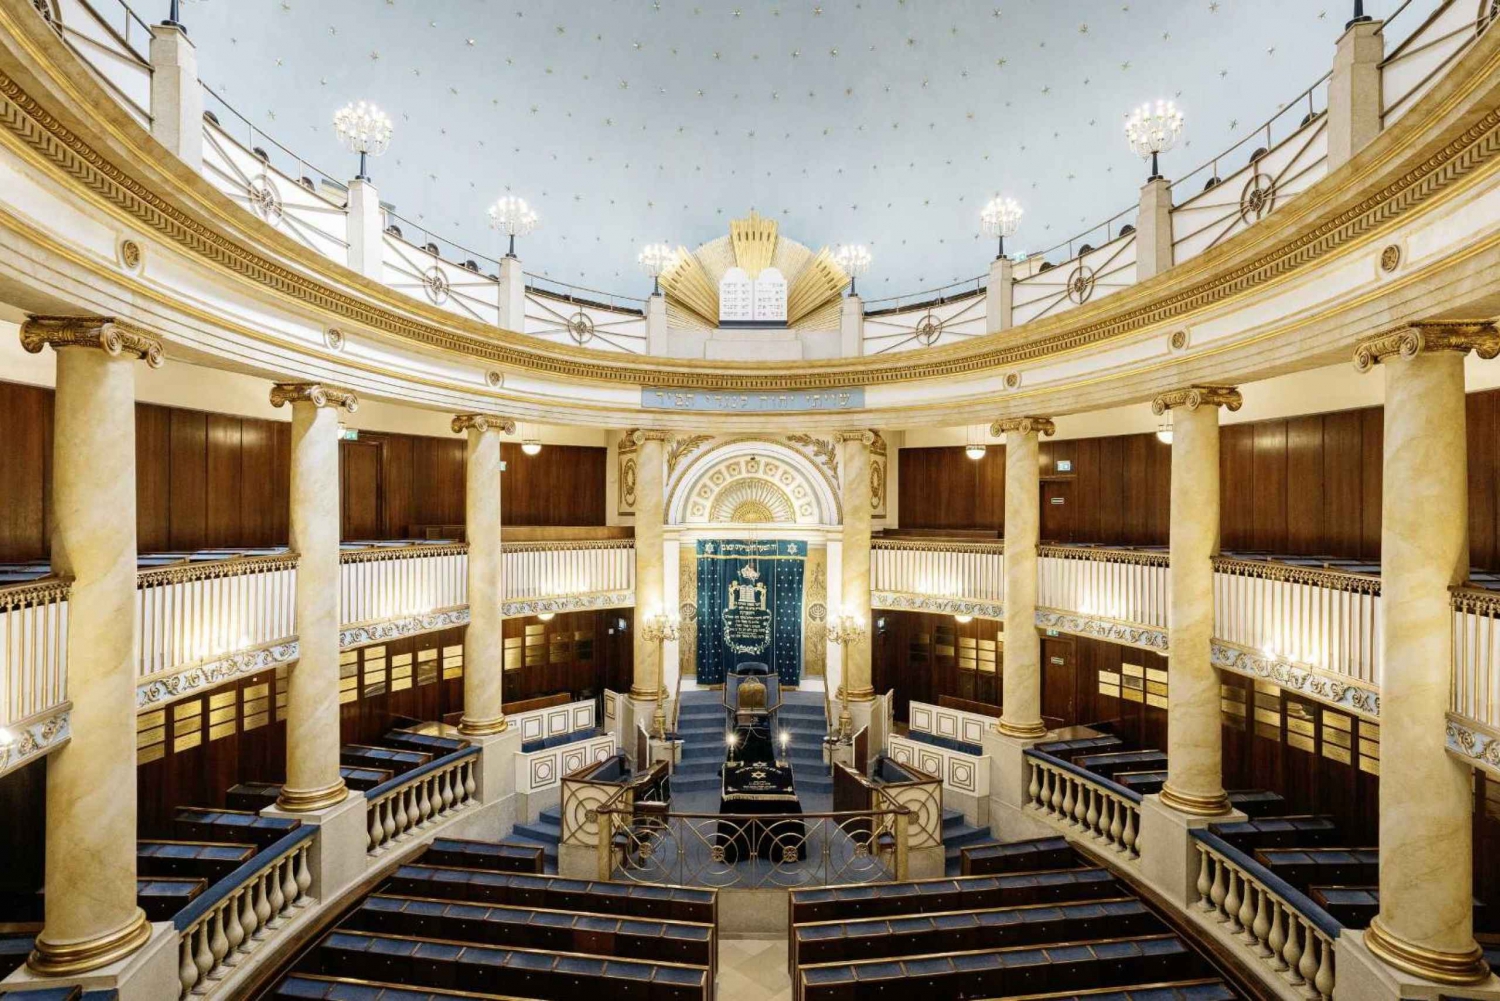 Viena judaica: excursão guiada pela sinagoga da cidade